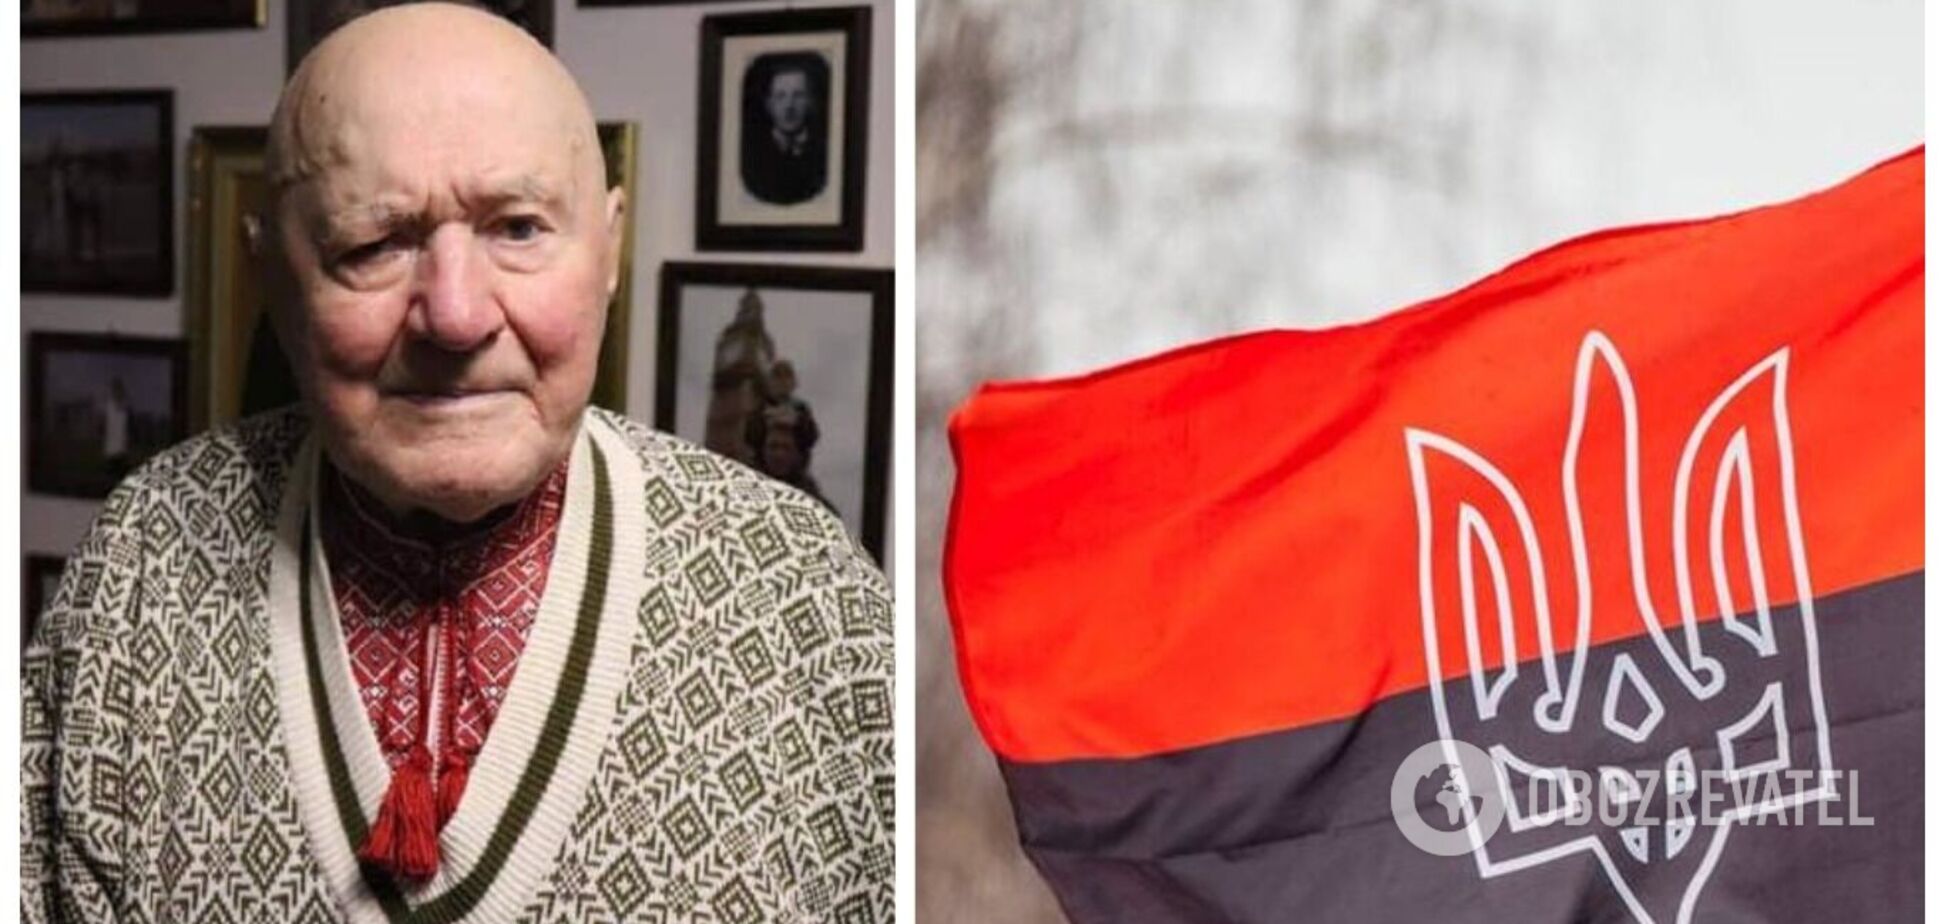 Легенді повстанського руху УПА Симчичу виповнилося 99 років: він провів у радянських таборах та в'язницях 32 роки